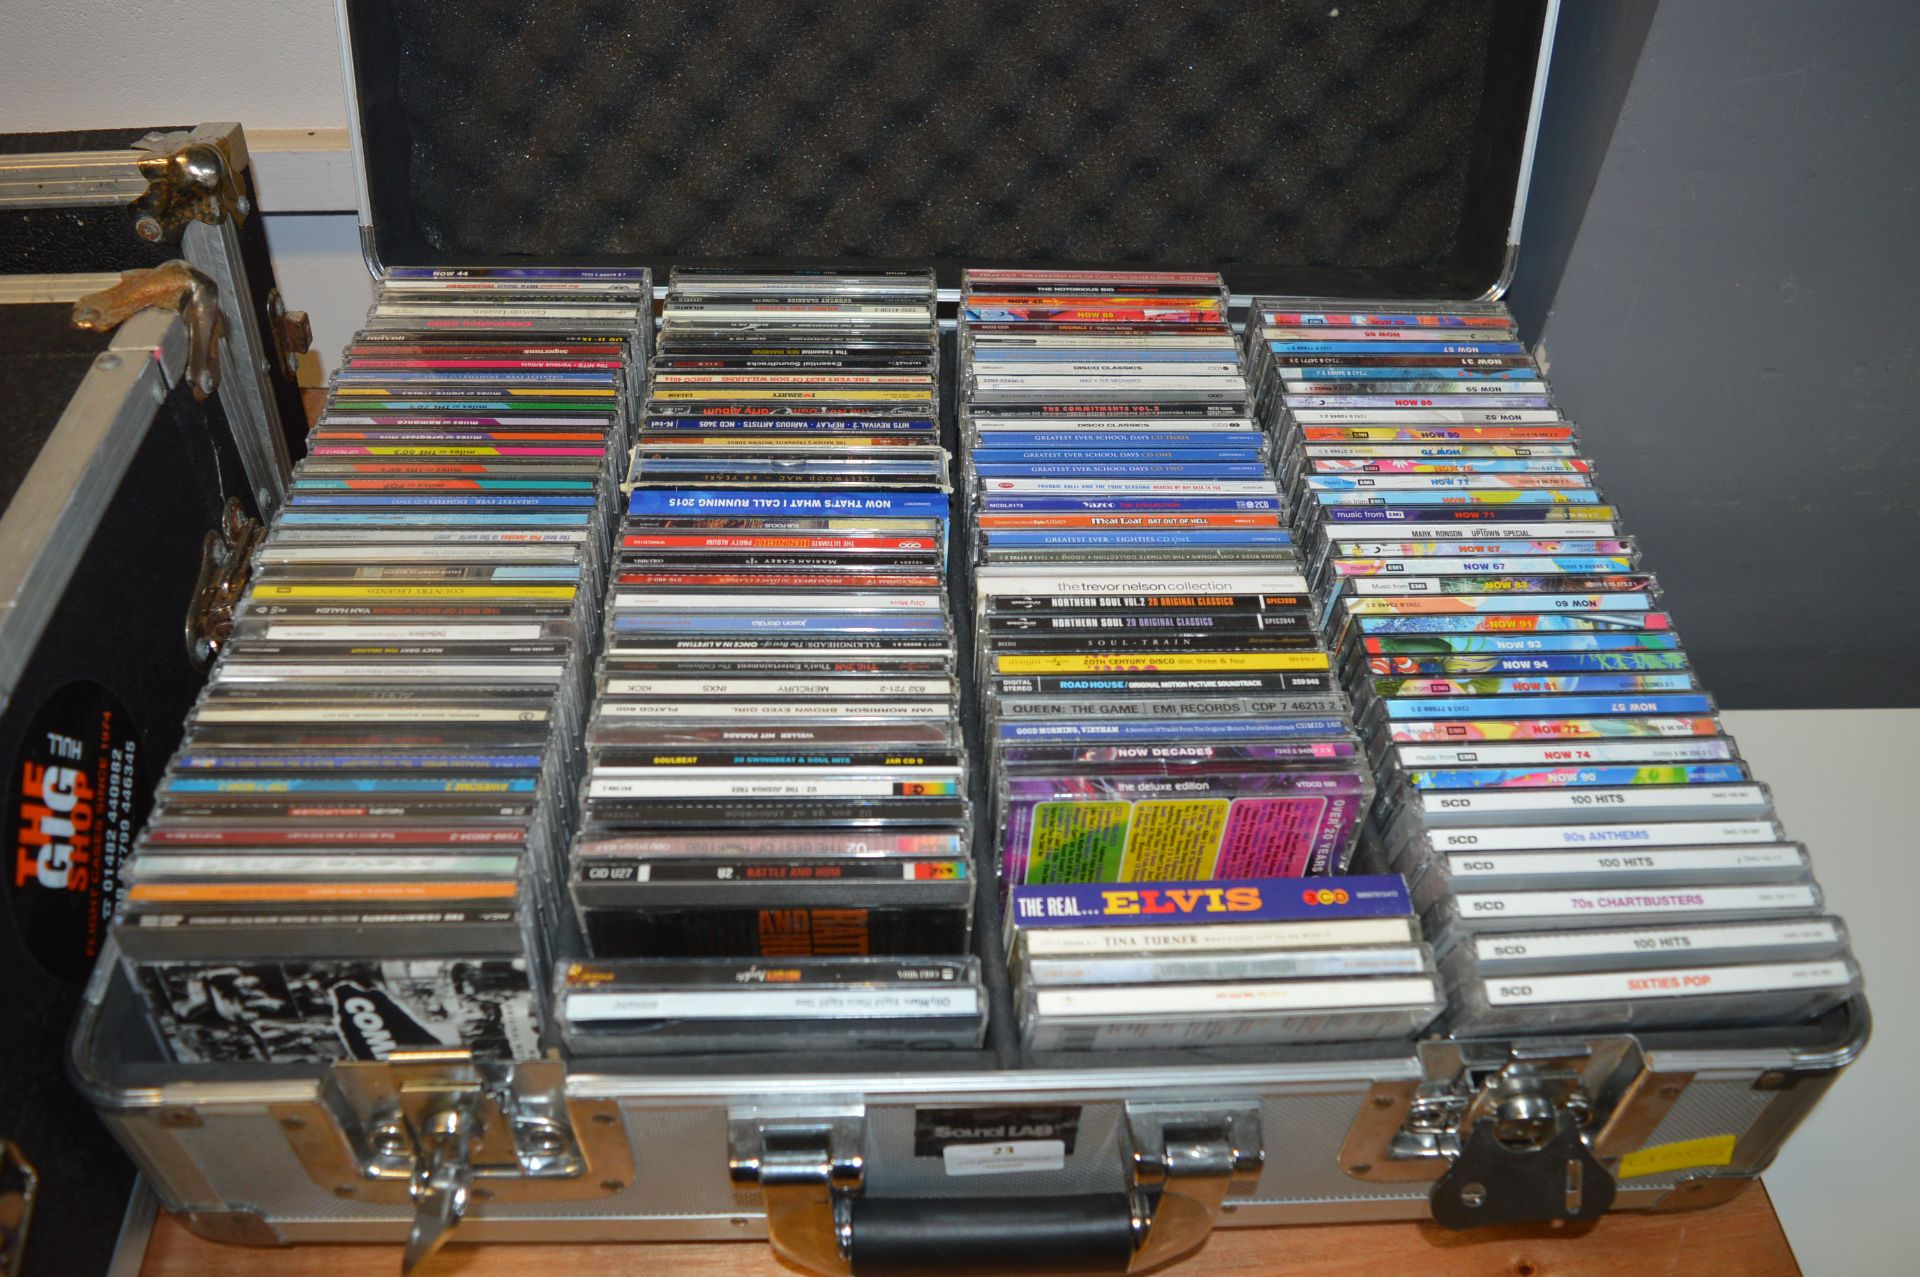 Sound Lad Aluminium Flight Case Containing ~150 CDs